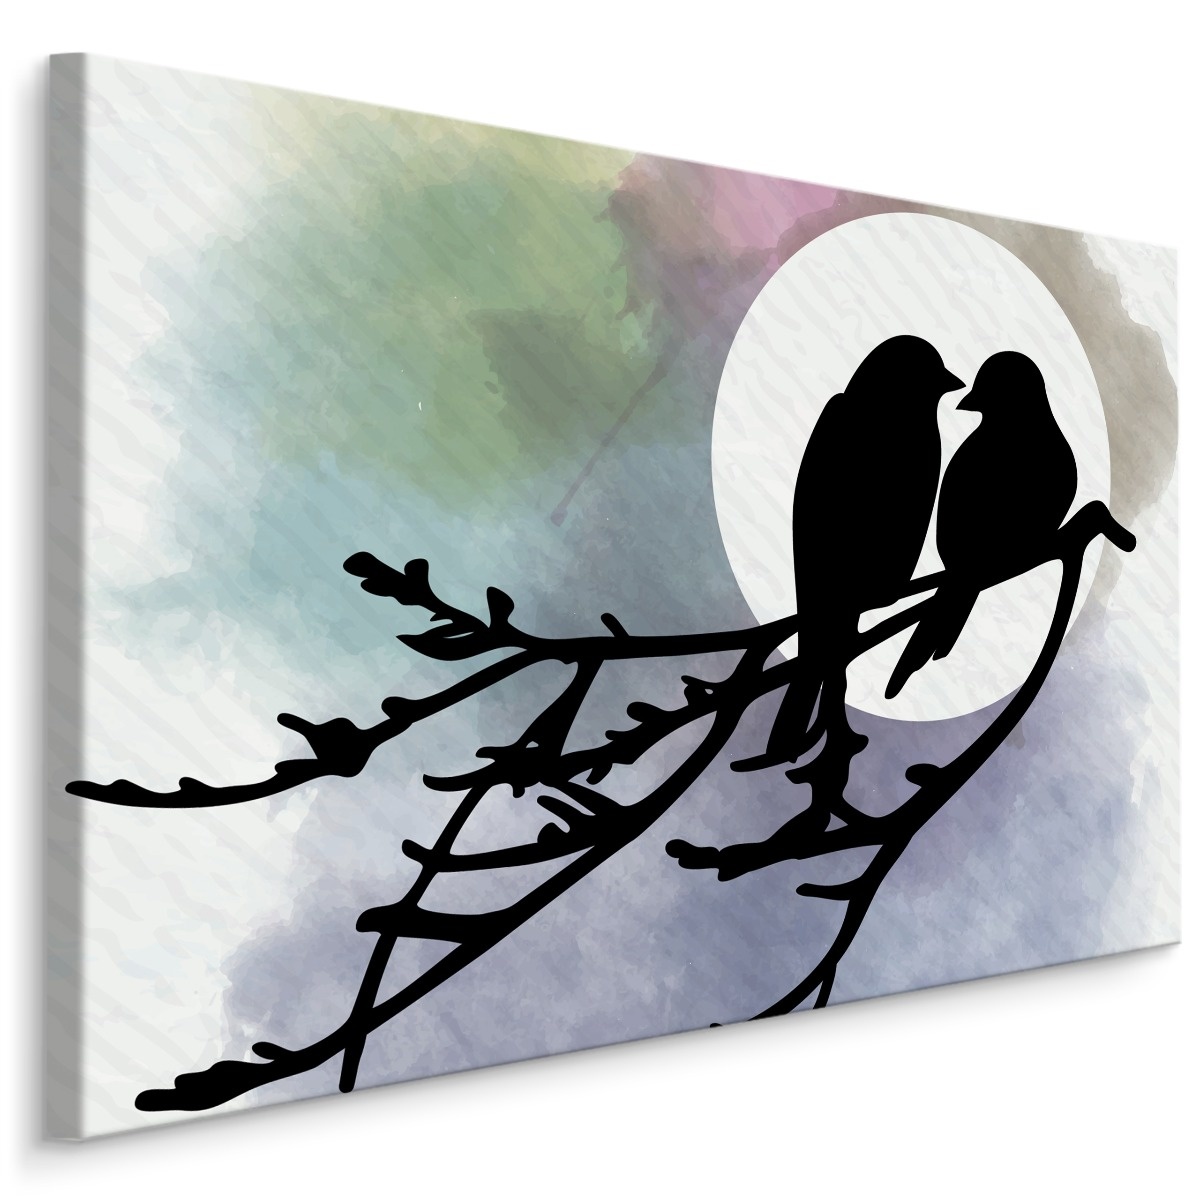 Schilderij - Verliefde Vogels, 5 luik, Premium Print